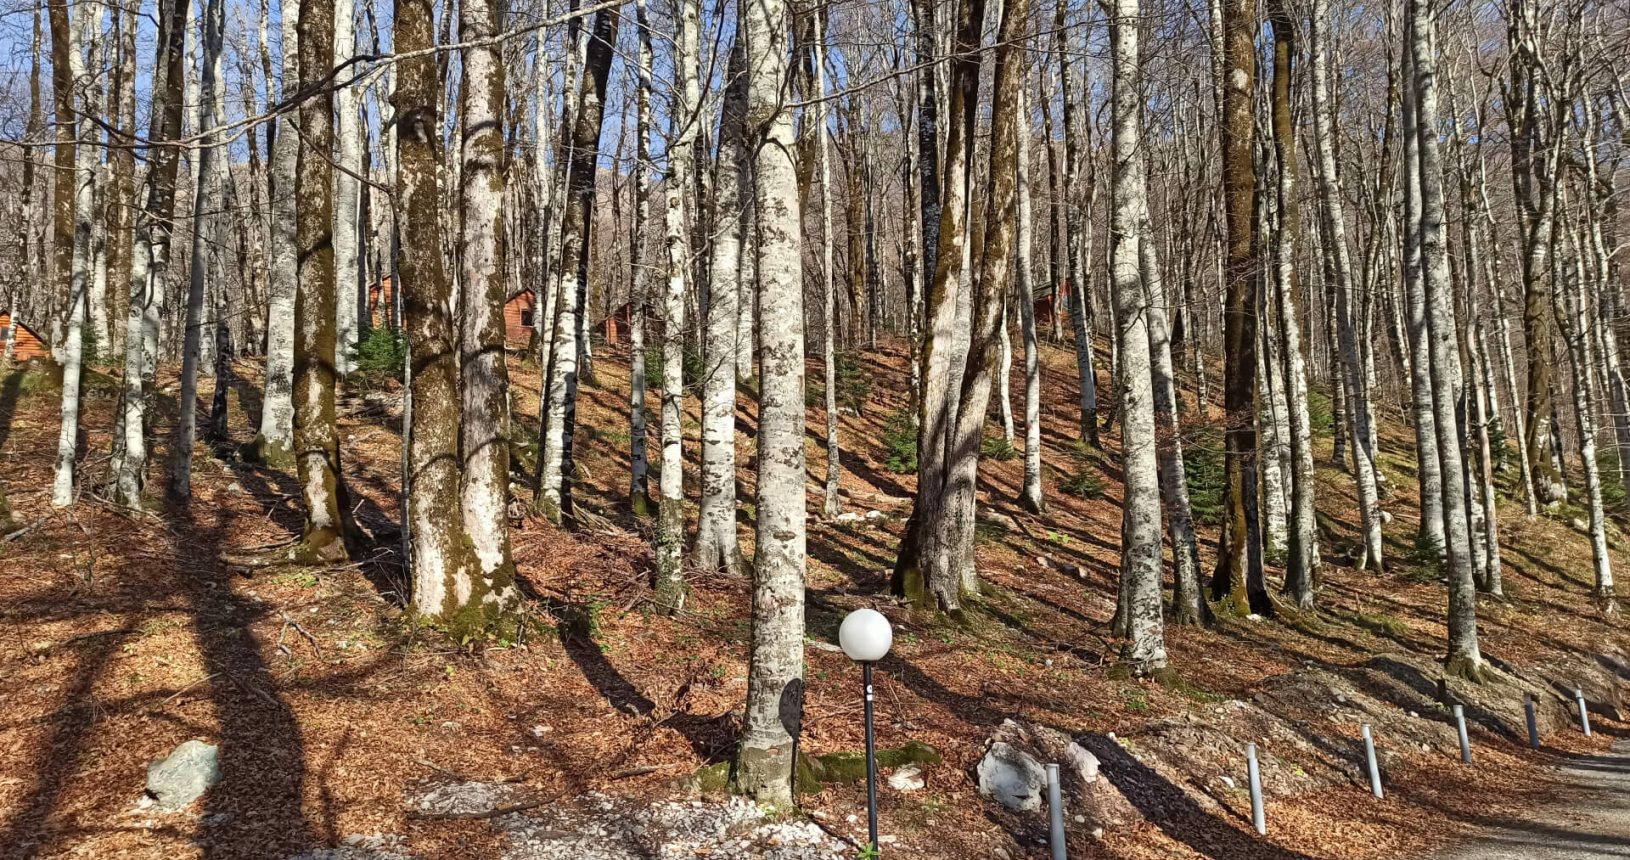 National Park Biogradska Gora naked trees at the forest